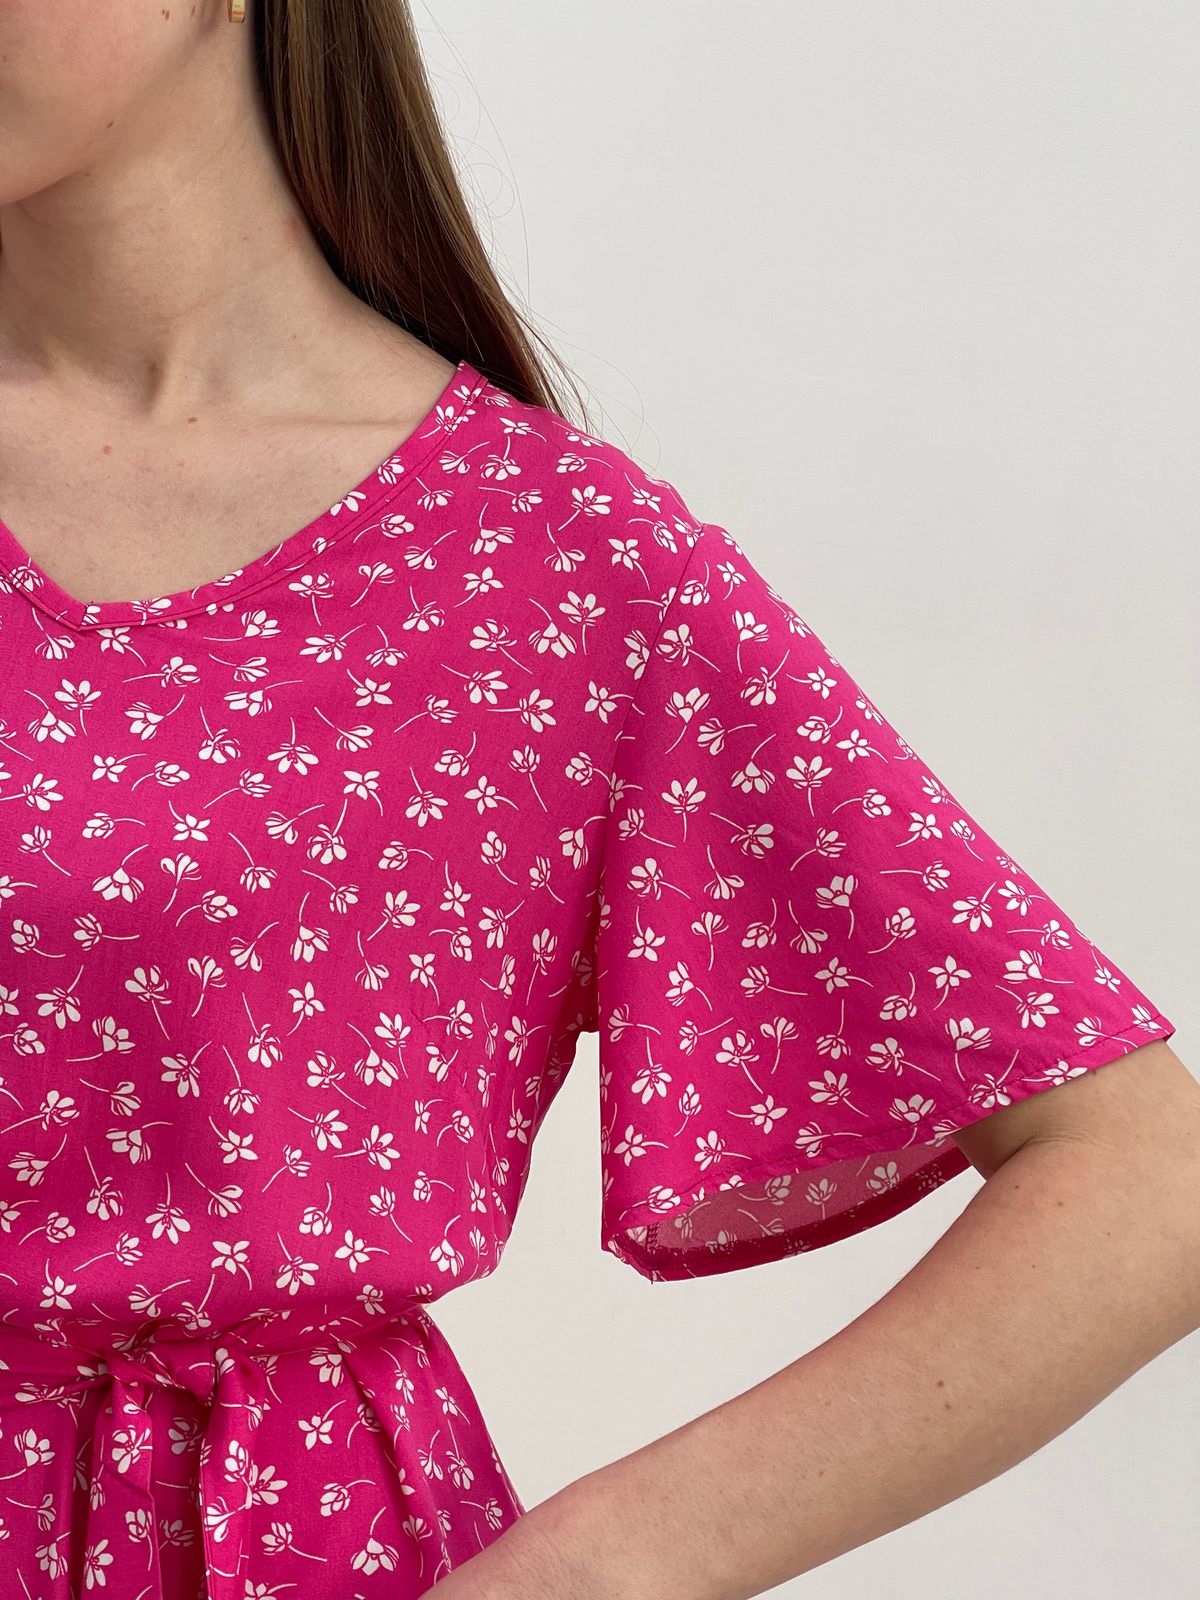 Купить Платье летнее ниже колен в цветочек розовое Merlini Мискано 700001283 размер 42-44 (S-M) в интернет-магазине